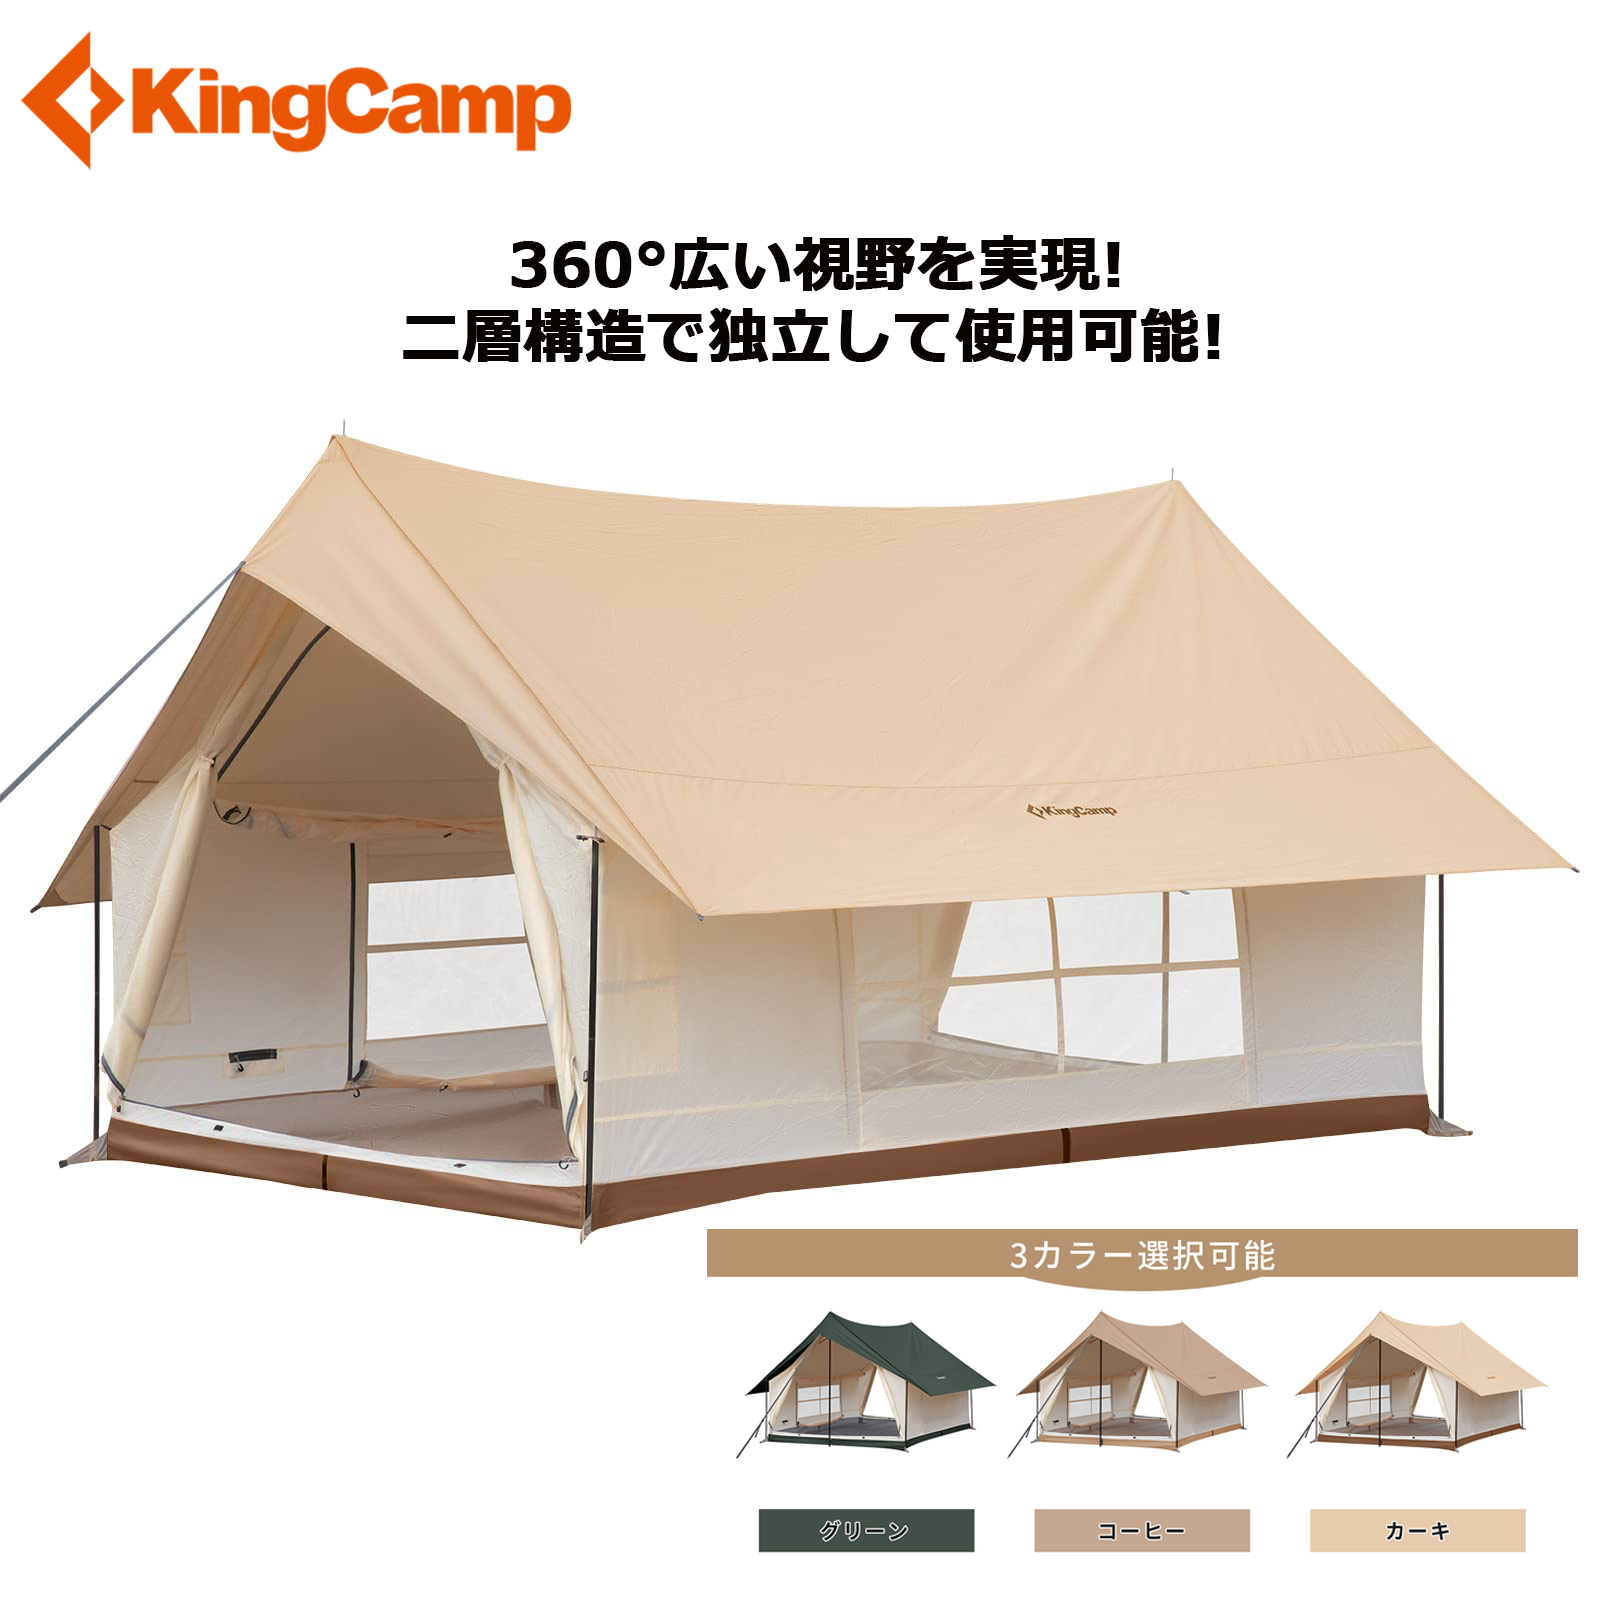 楽天市場クーポン付き倍ロッジ型テント キャンプ 大型